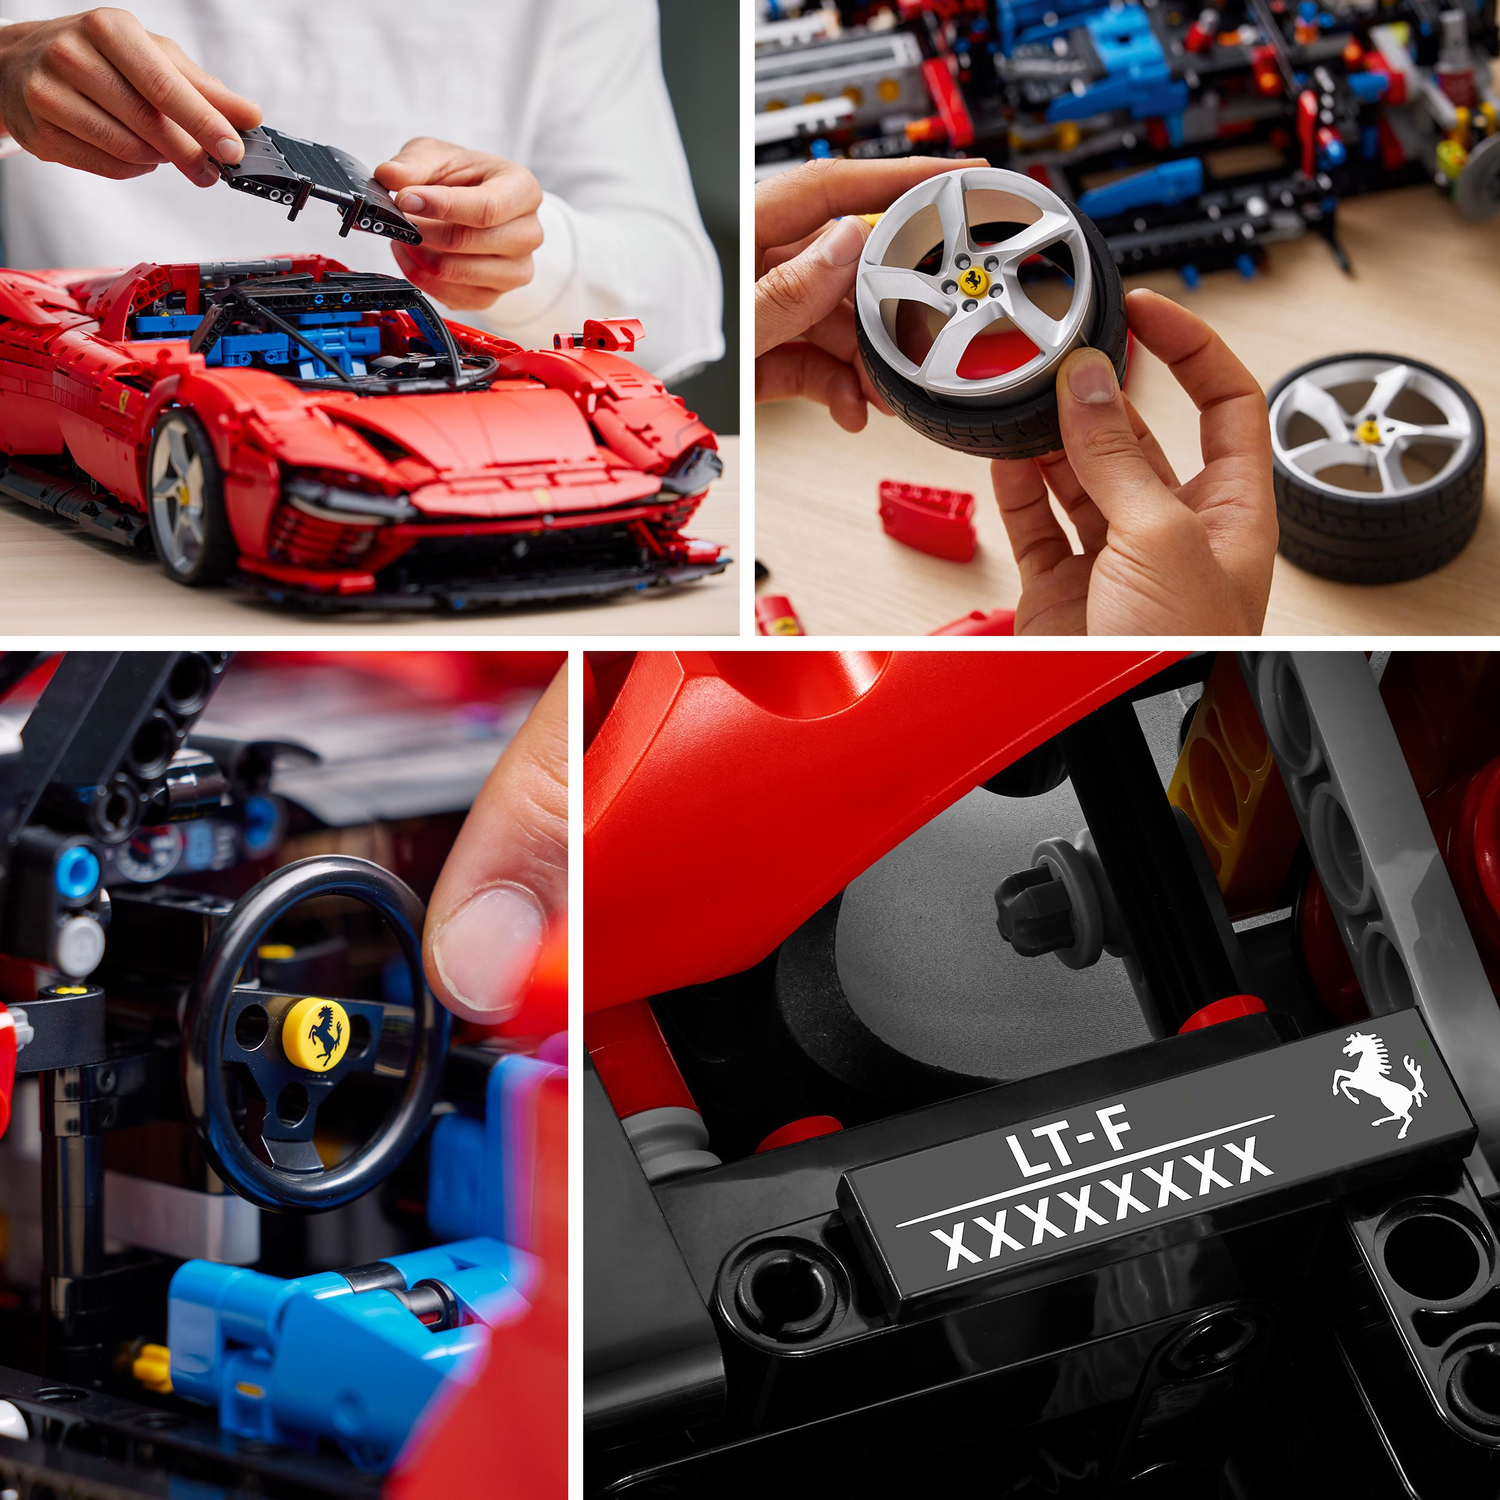 prosa Guggenheim Museum Højttaler LEGO Technic Ferrari Daytona SP3 Model Car Set - Imagine That Toys